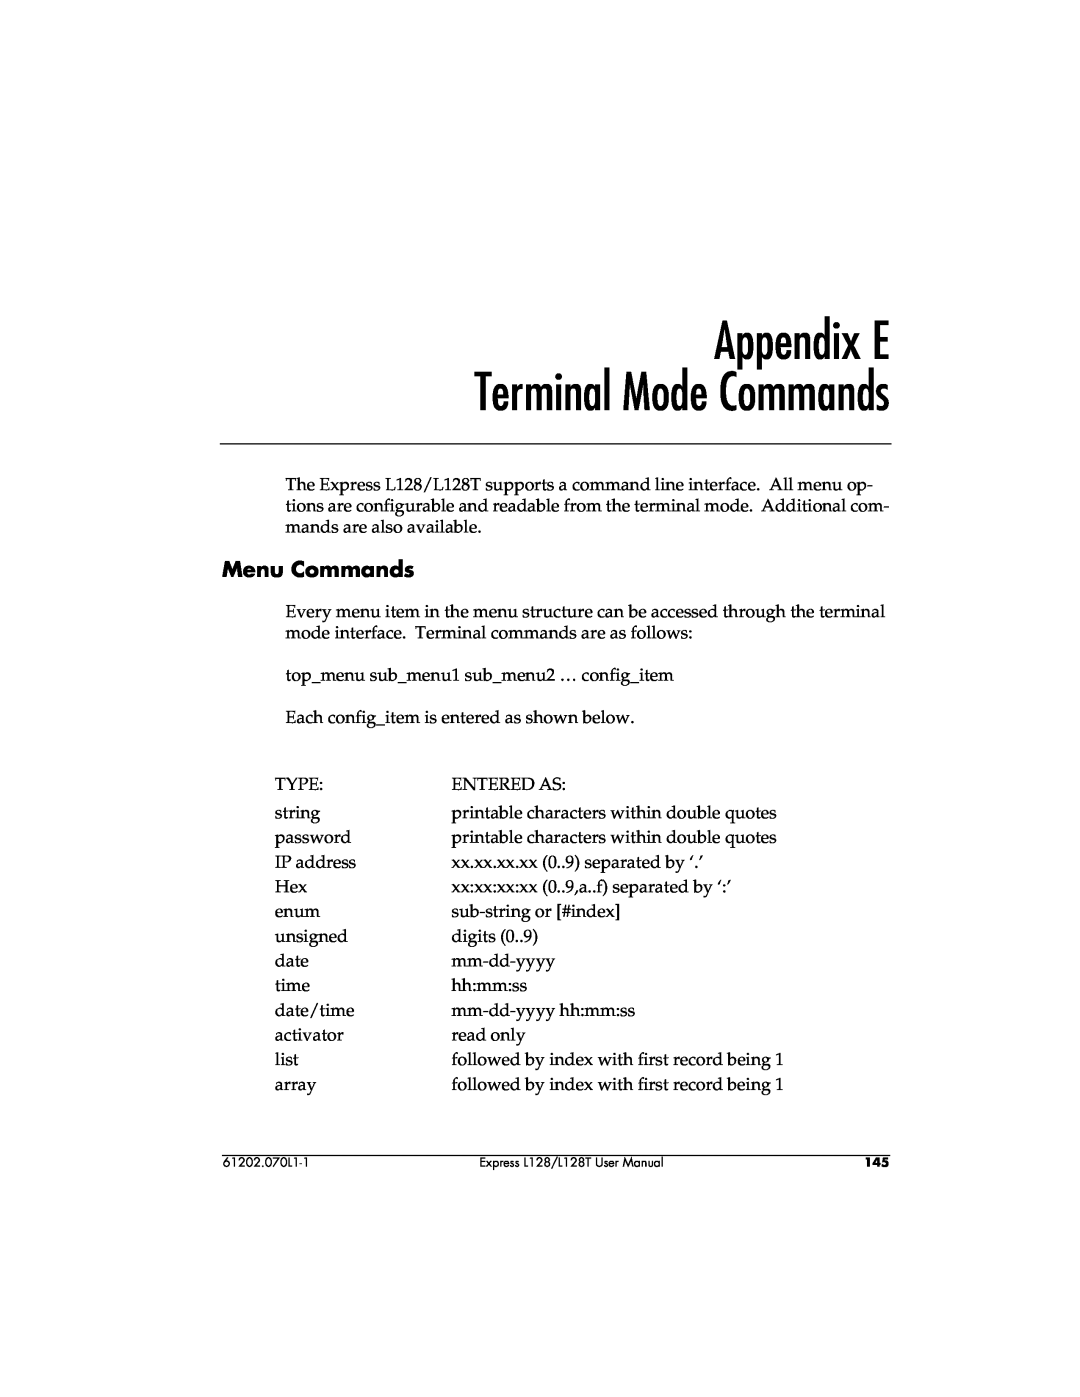 ADTRAN L128T user manual Appendix E Terminal Mode Commands, Menu Commands 